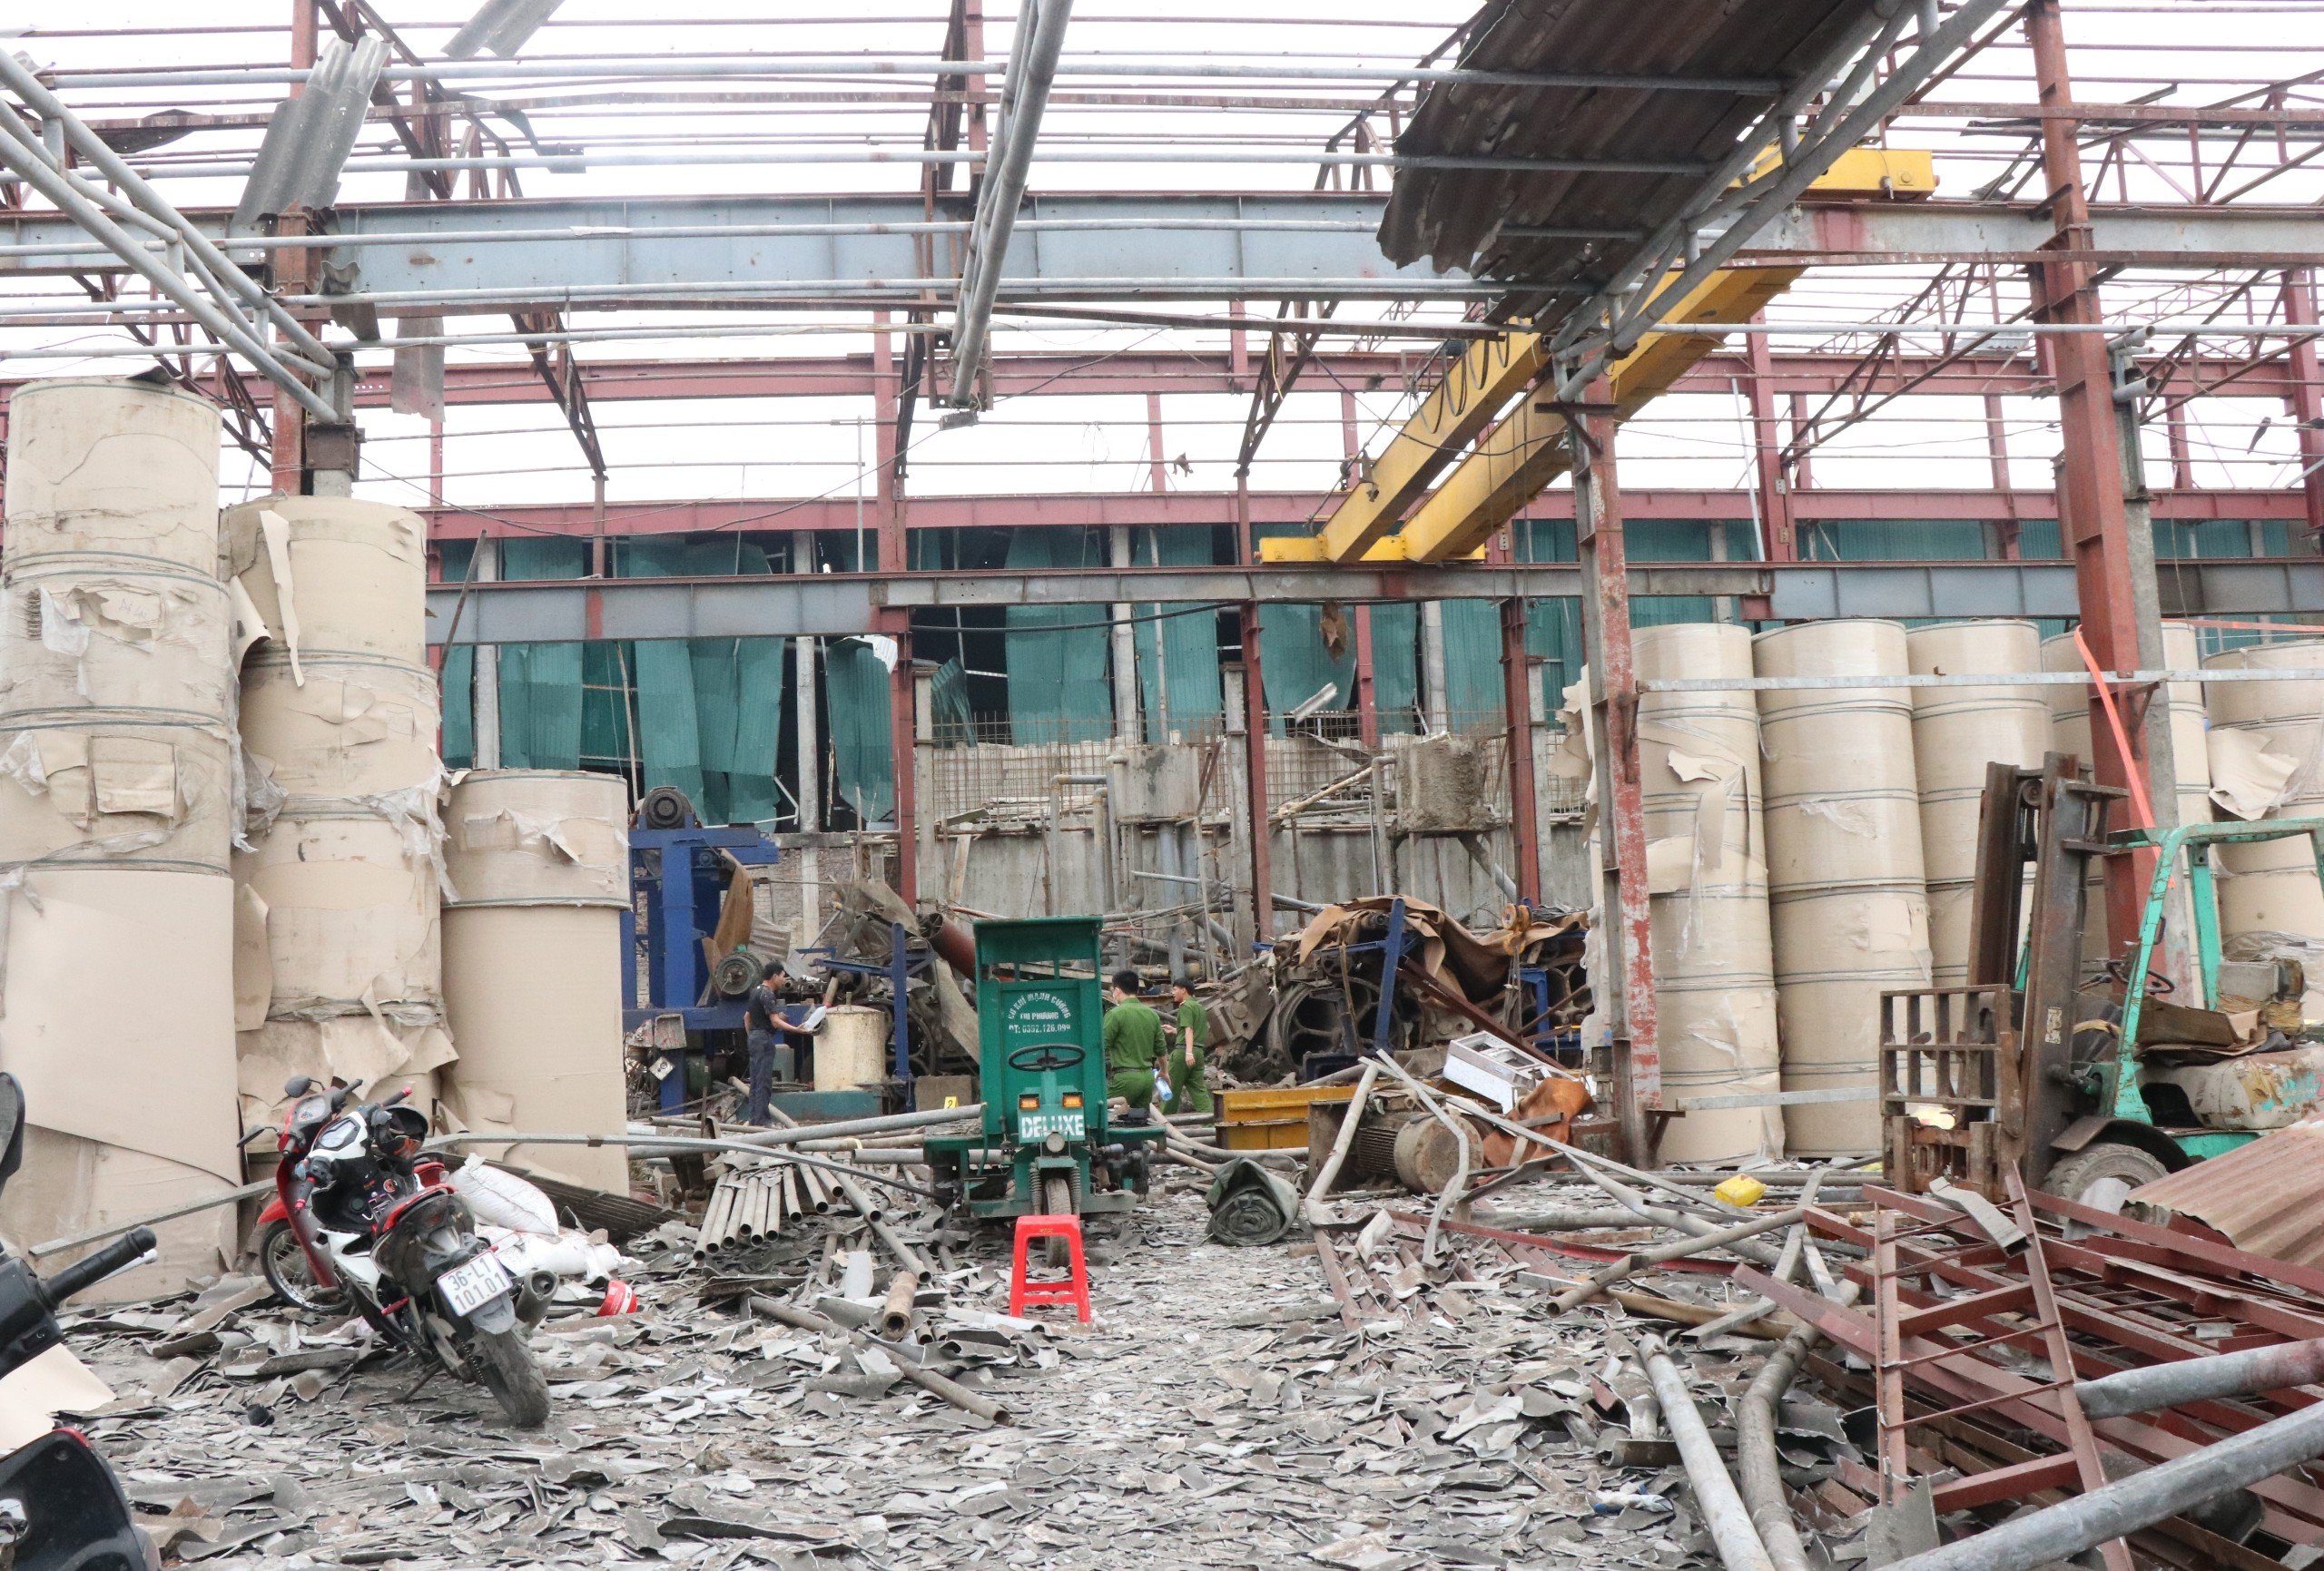 Vụ nổ tại khu công nghiệp ở Bắc Ninh khiến 1 người tử vong, 2 người bị thương- Ảnh 1.